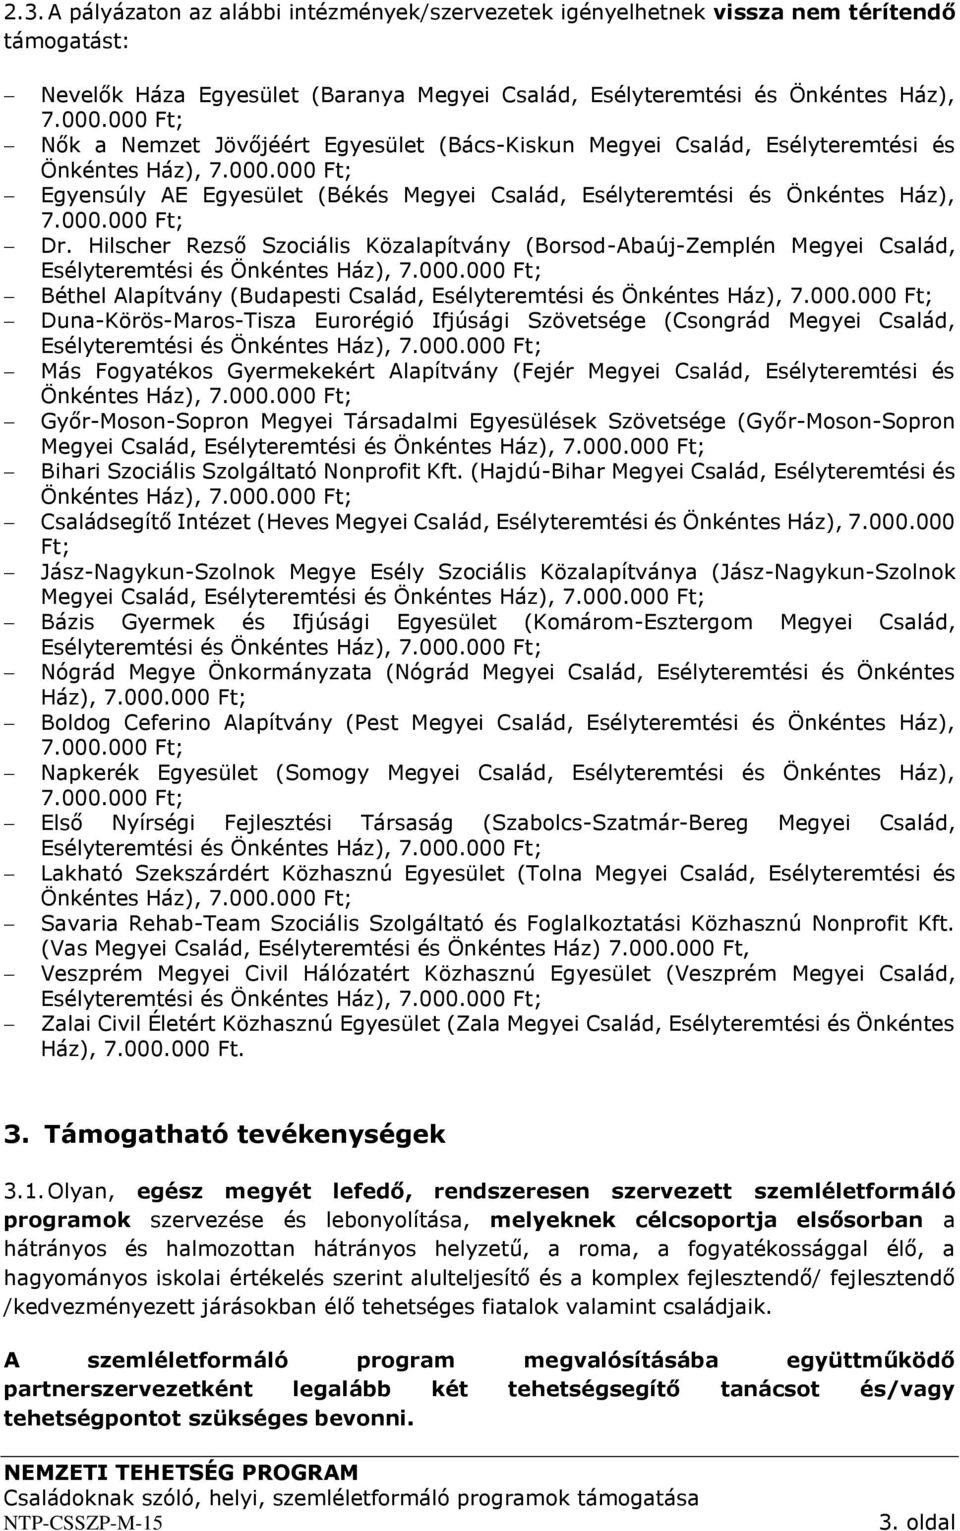 Hilscher Rezső Szociális Közalapítvány (Borsod-Abaúj-Zemplén Megyei Család, Esélyteremtési és Önkéntes Ház), 7.000.